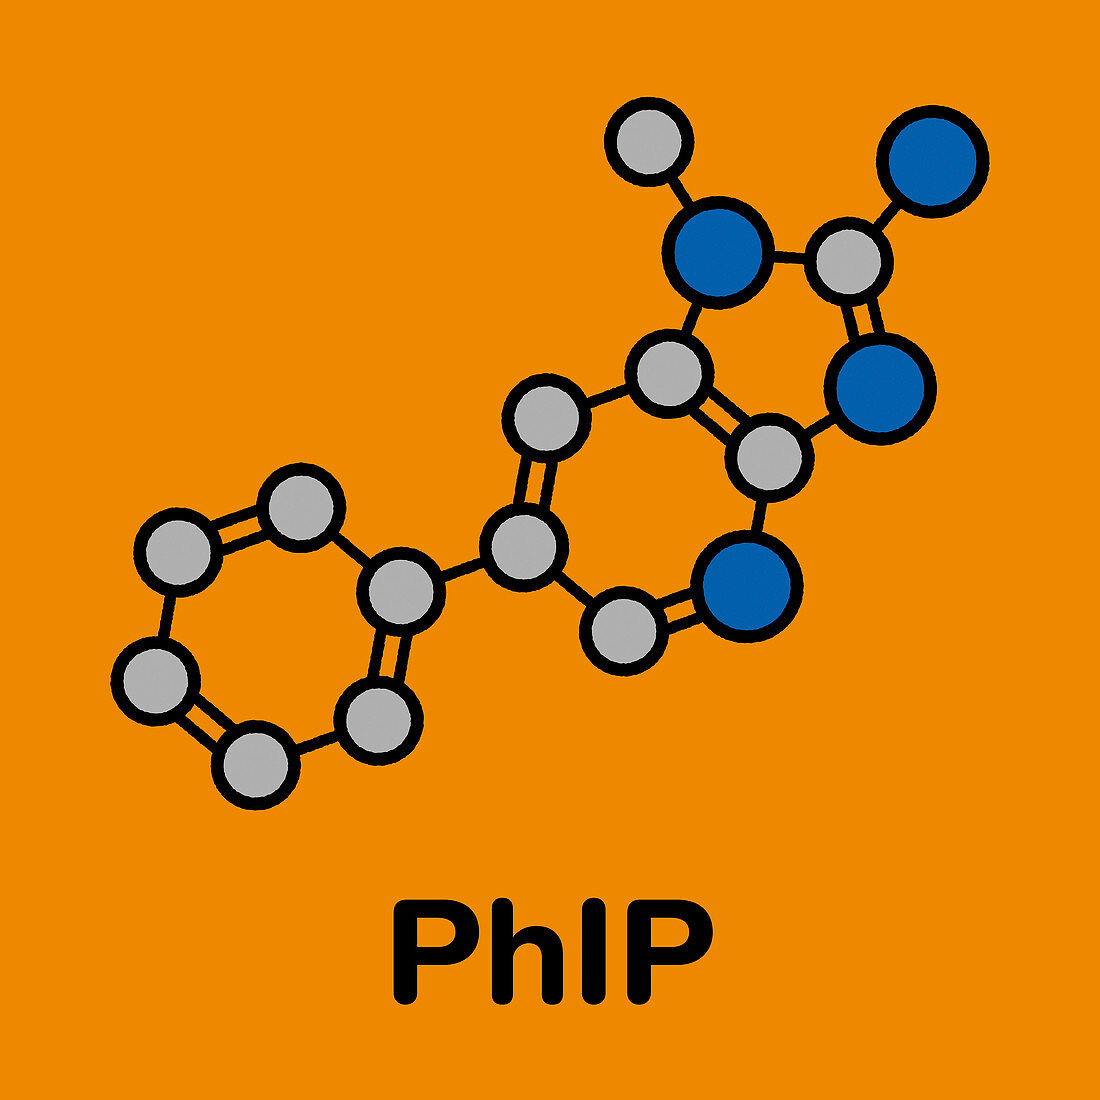 PhIP molecule